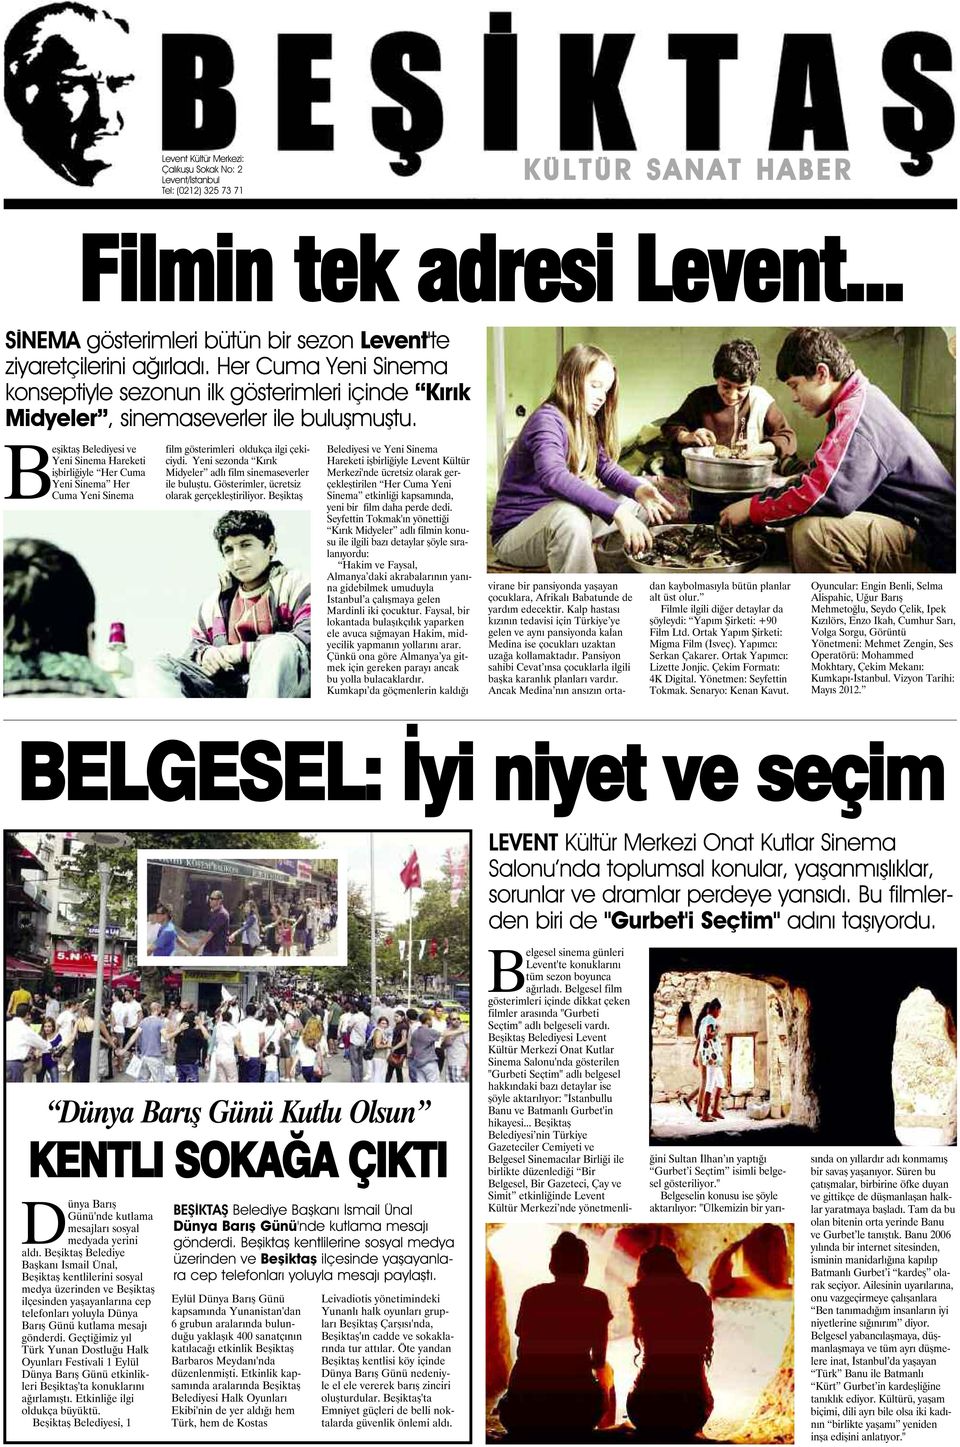 Beşiktaş Belediyesi ve Yeni Sinema Hareketi işbirliğiyle Her Cuma Yeni Sinema Her Cuma Yeni Sinema film gösterimleri oldukça ilgi çekiciydi.